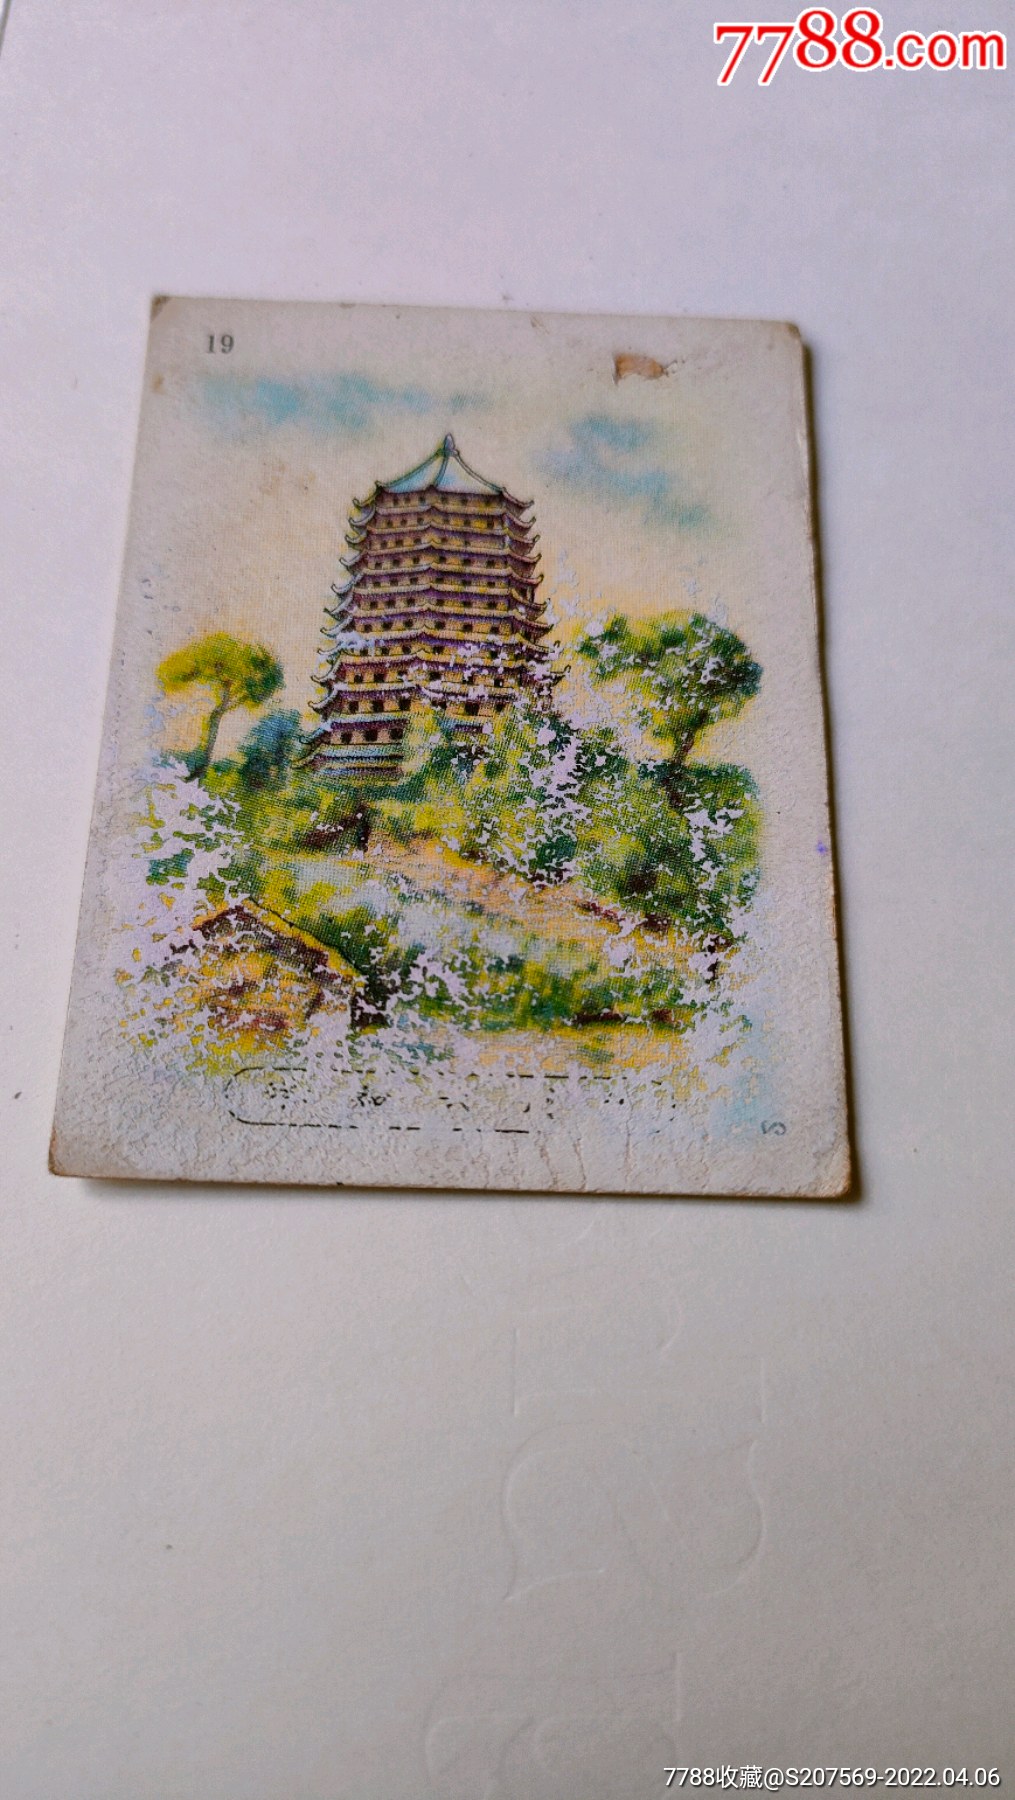 杭州烟卡图片